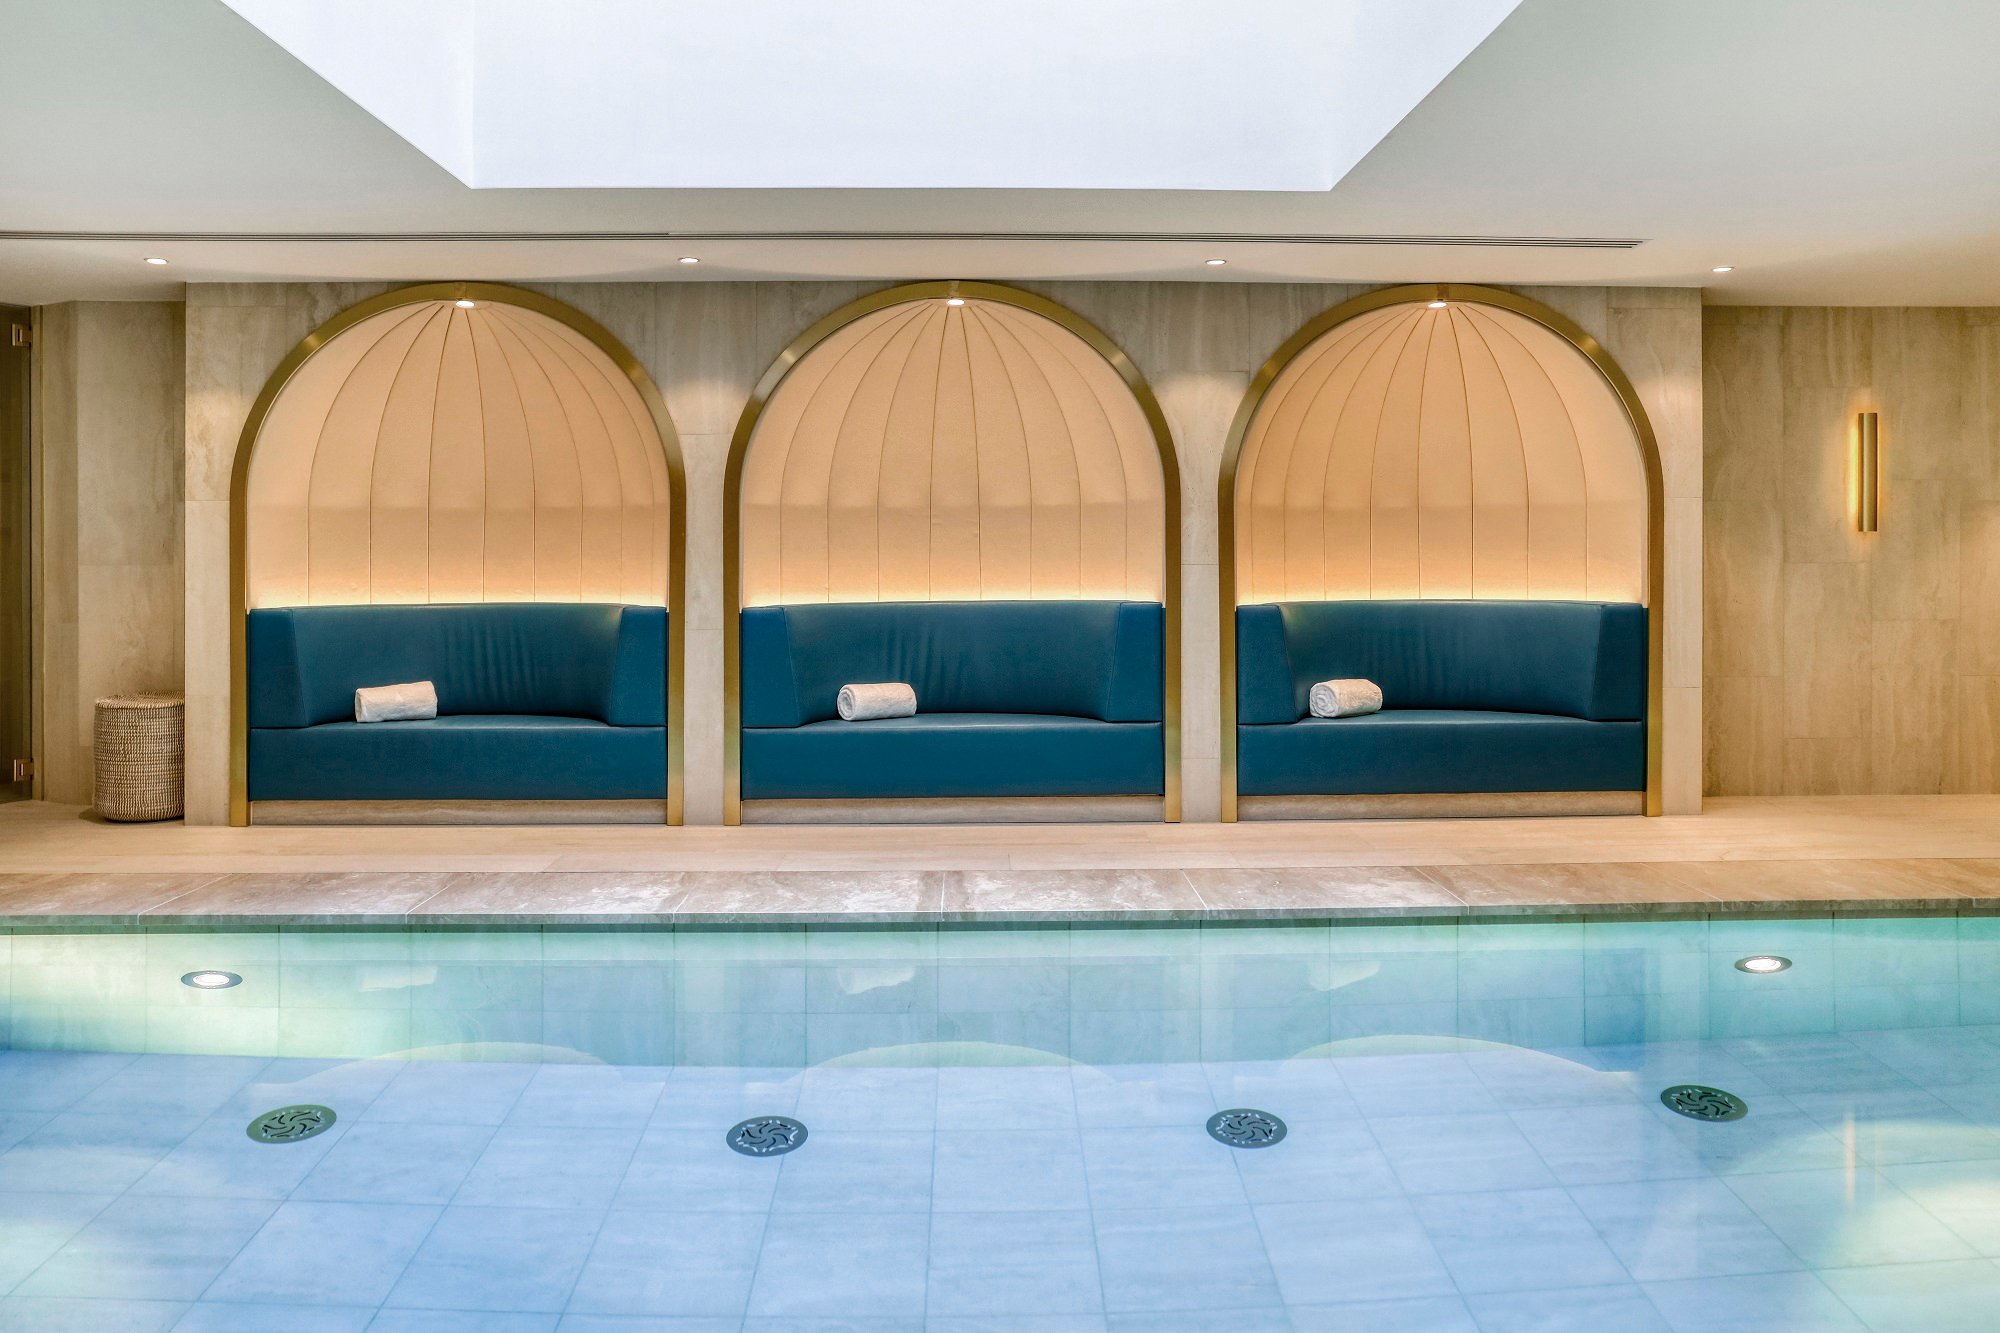 Maison Albar Hotels Le Vendome - Spa Vendome by Carita - swimming pool